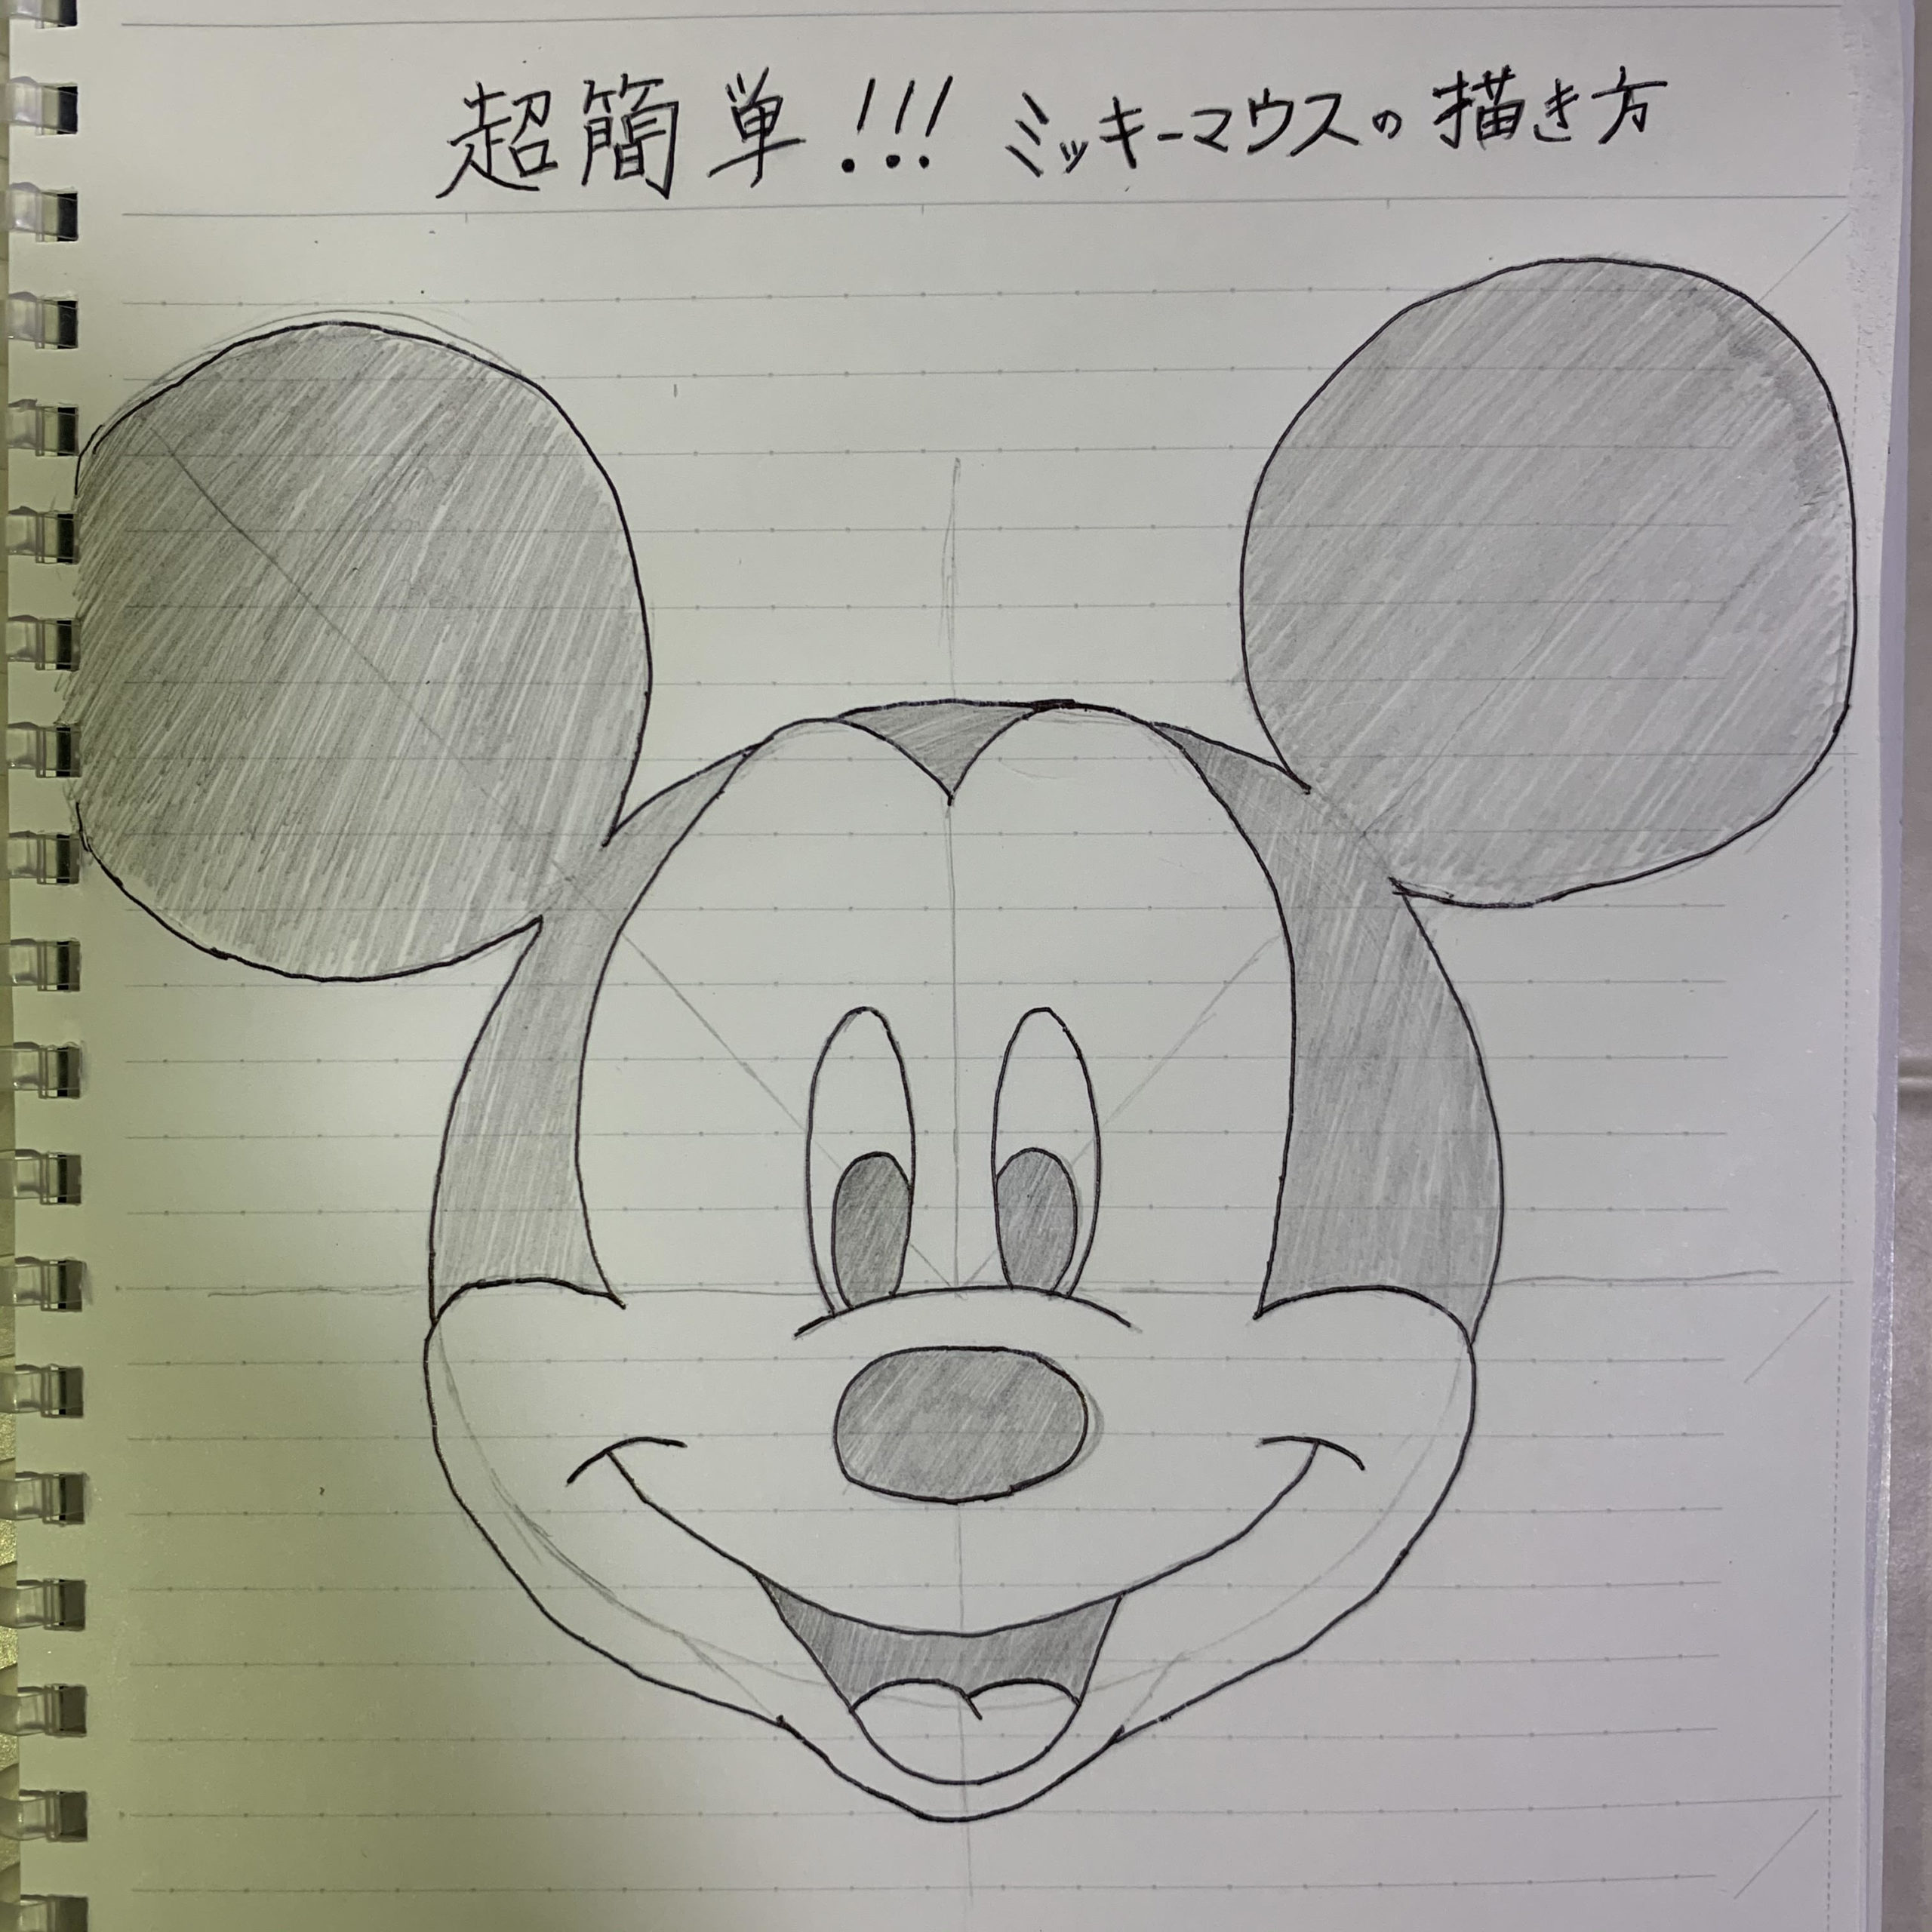 超簡単 ミッキーマウスの描き方 誰でも描けます ディズニーピック Disney Pic